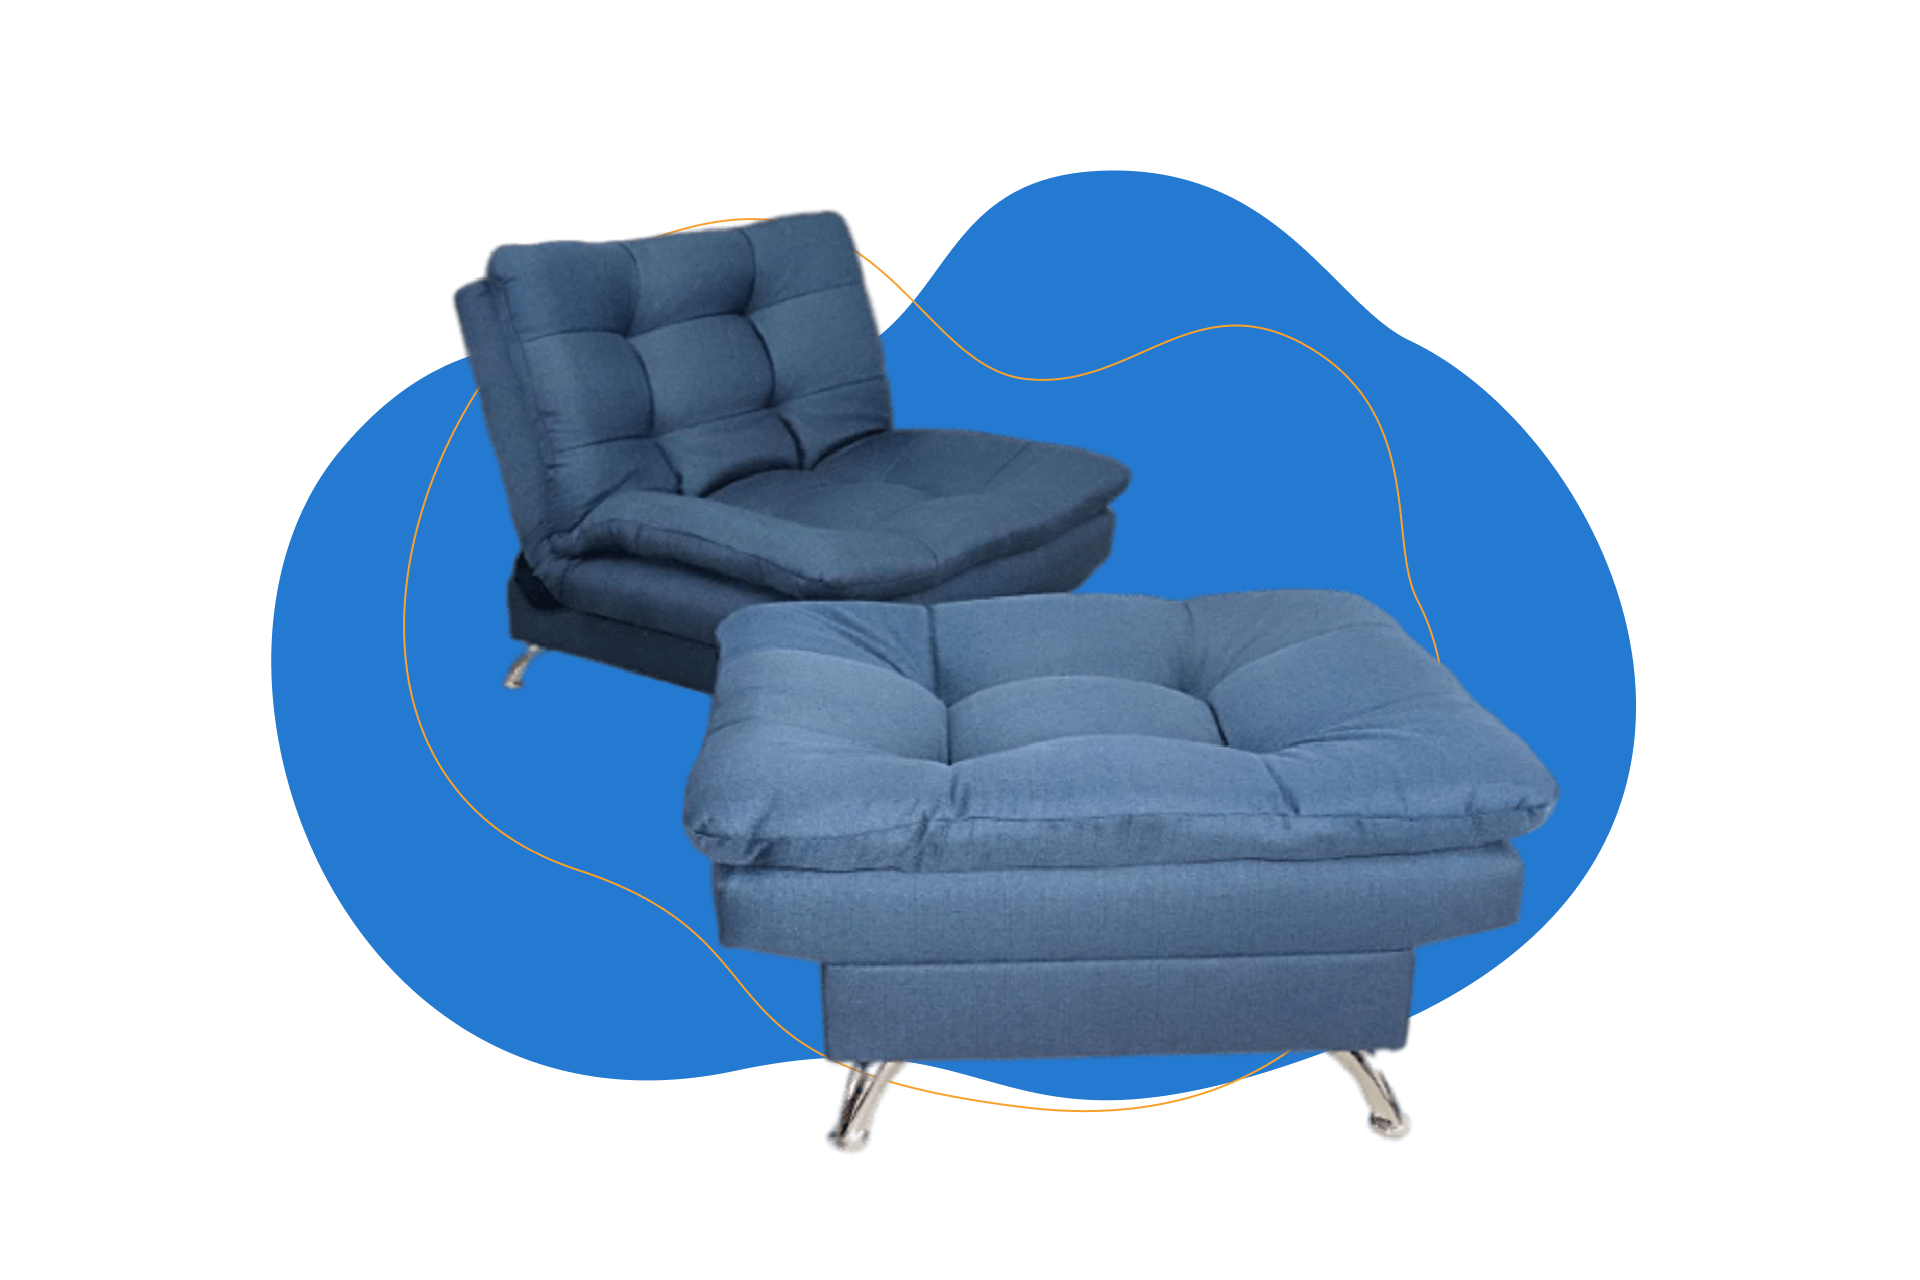 Sofá cama + taburete $𝟏𝟒,𝟗𝟗𝟎.𝟎𝟎 ¡ultima pieza! *cojines decorativos  y accesorios se venden por separado #sofacama #sofa #muebles…